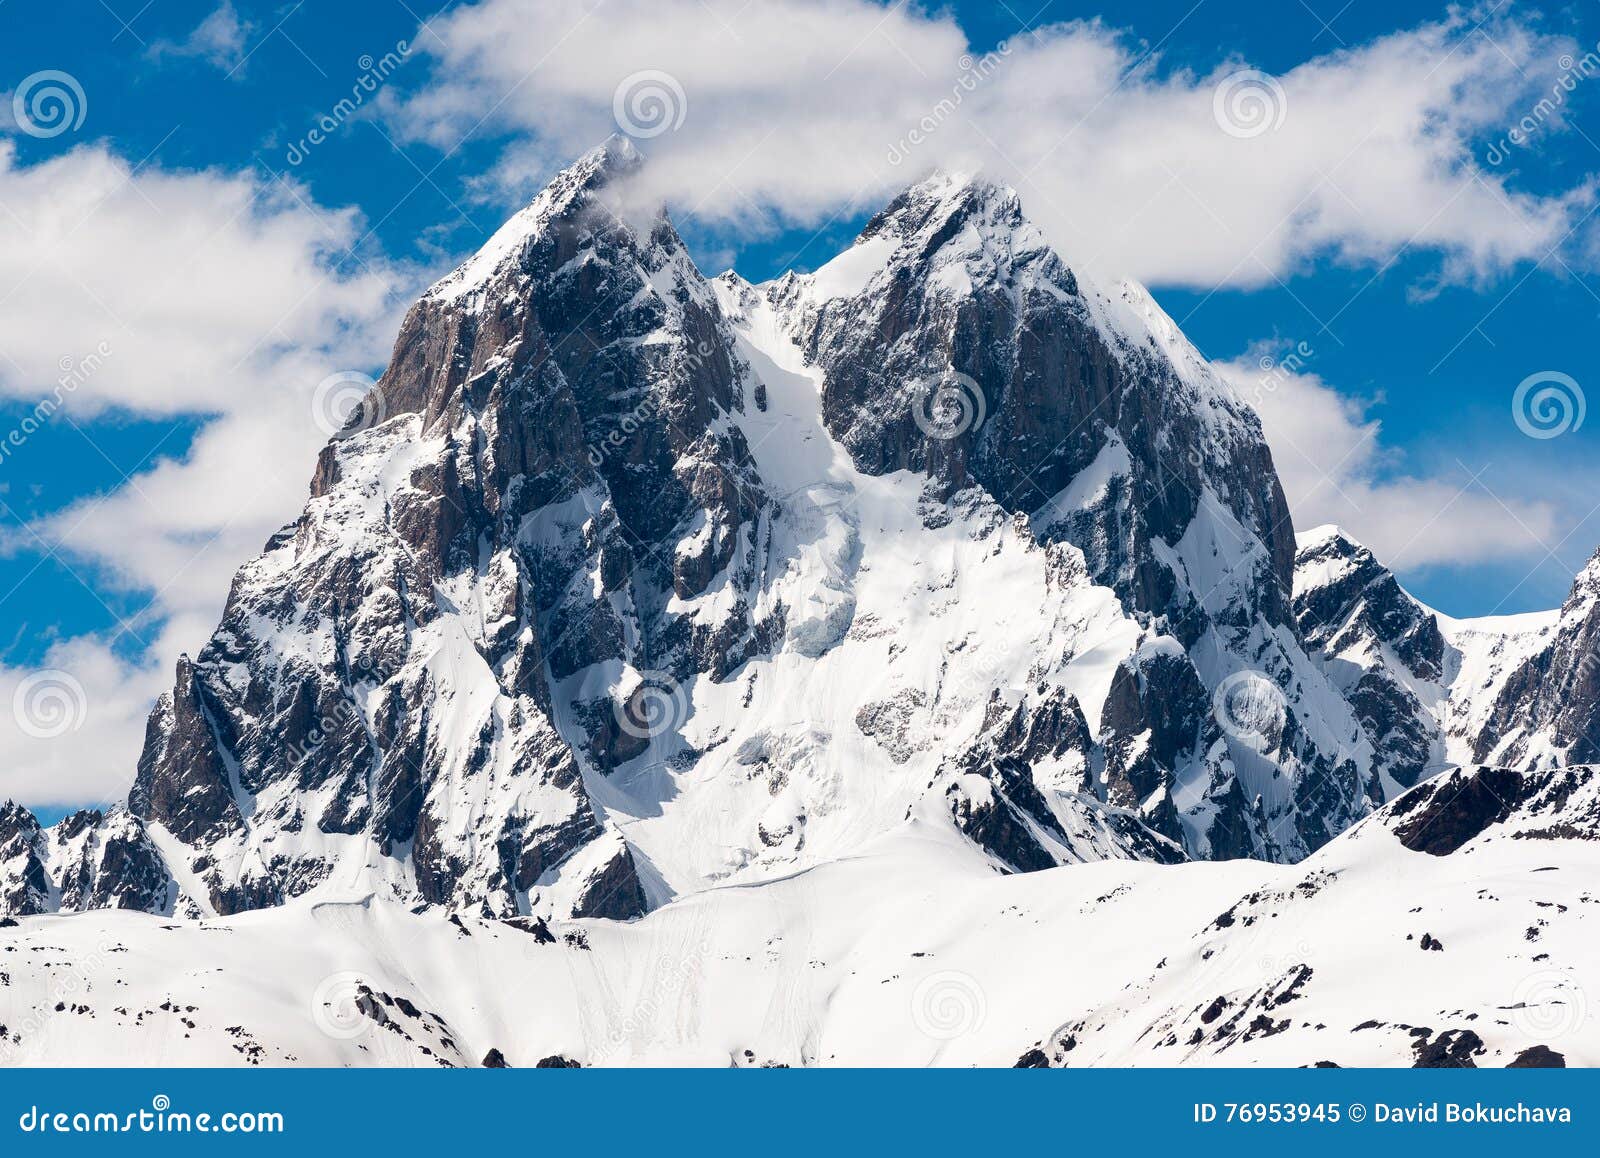 double peak mountain ushba